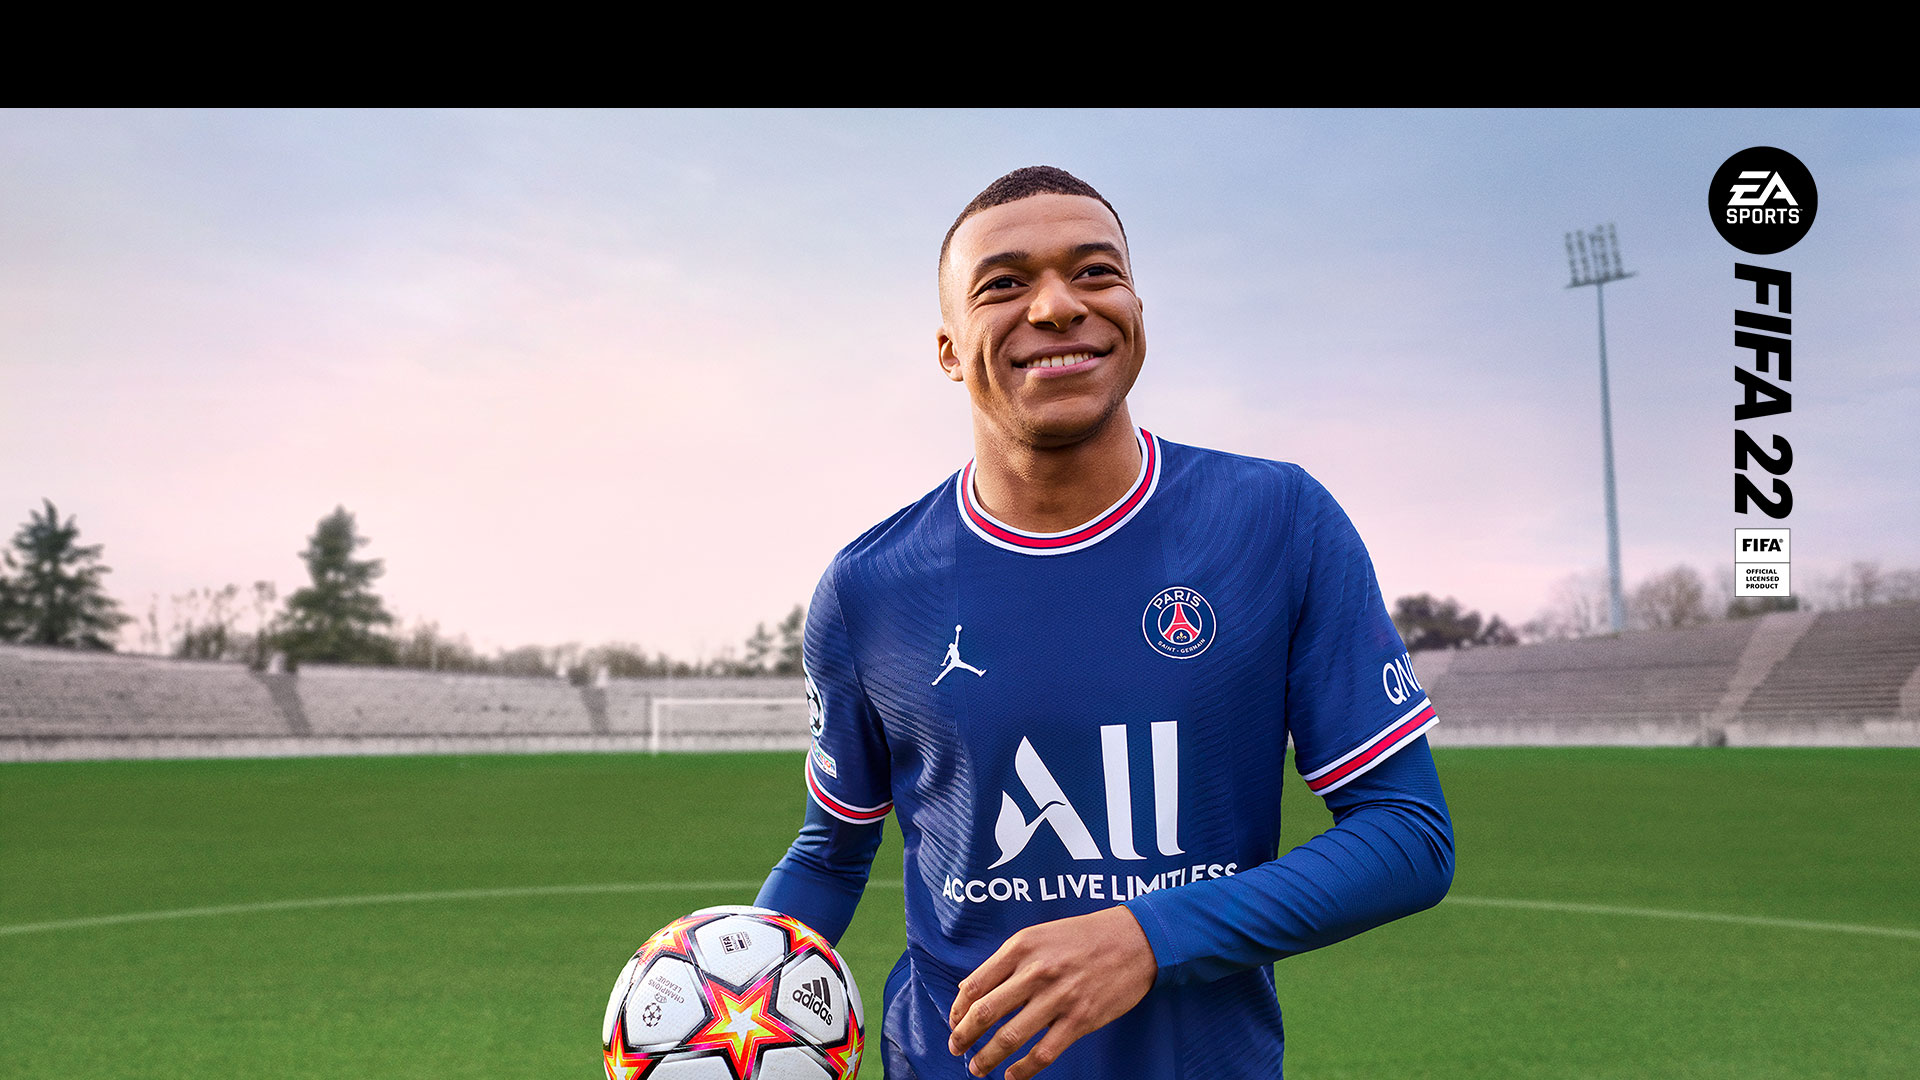 EA Sports, Produit sous licence officielle de FIFA 22. Un joueur souriant tient une balle dans un stade vide.